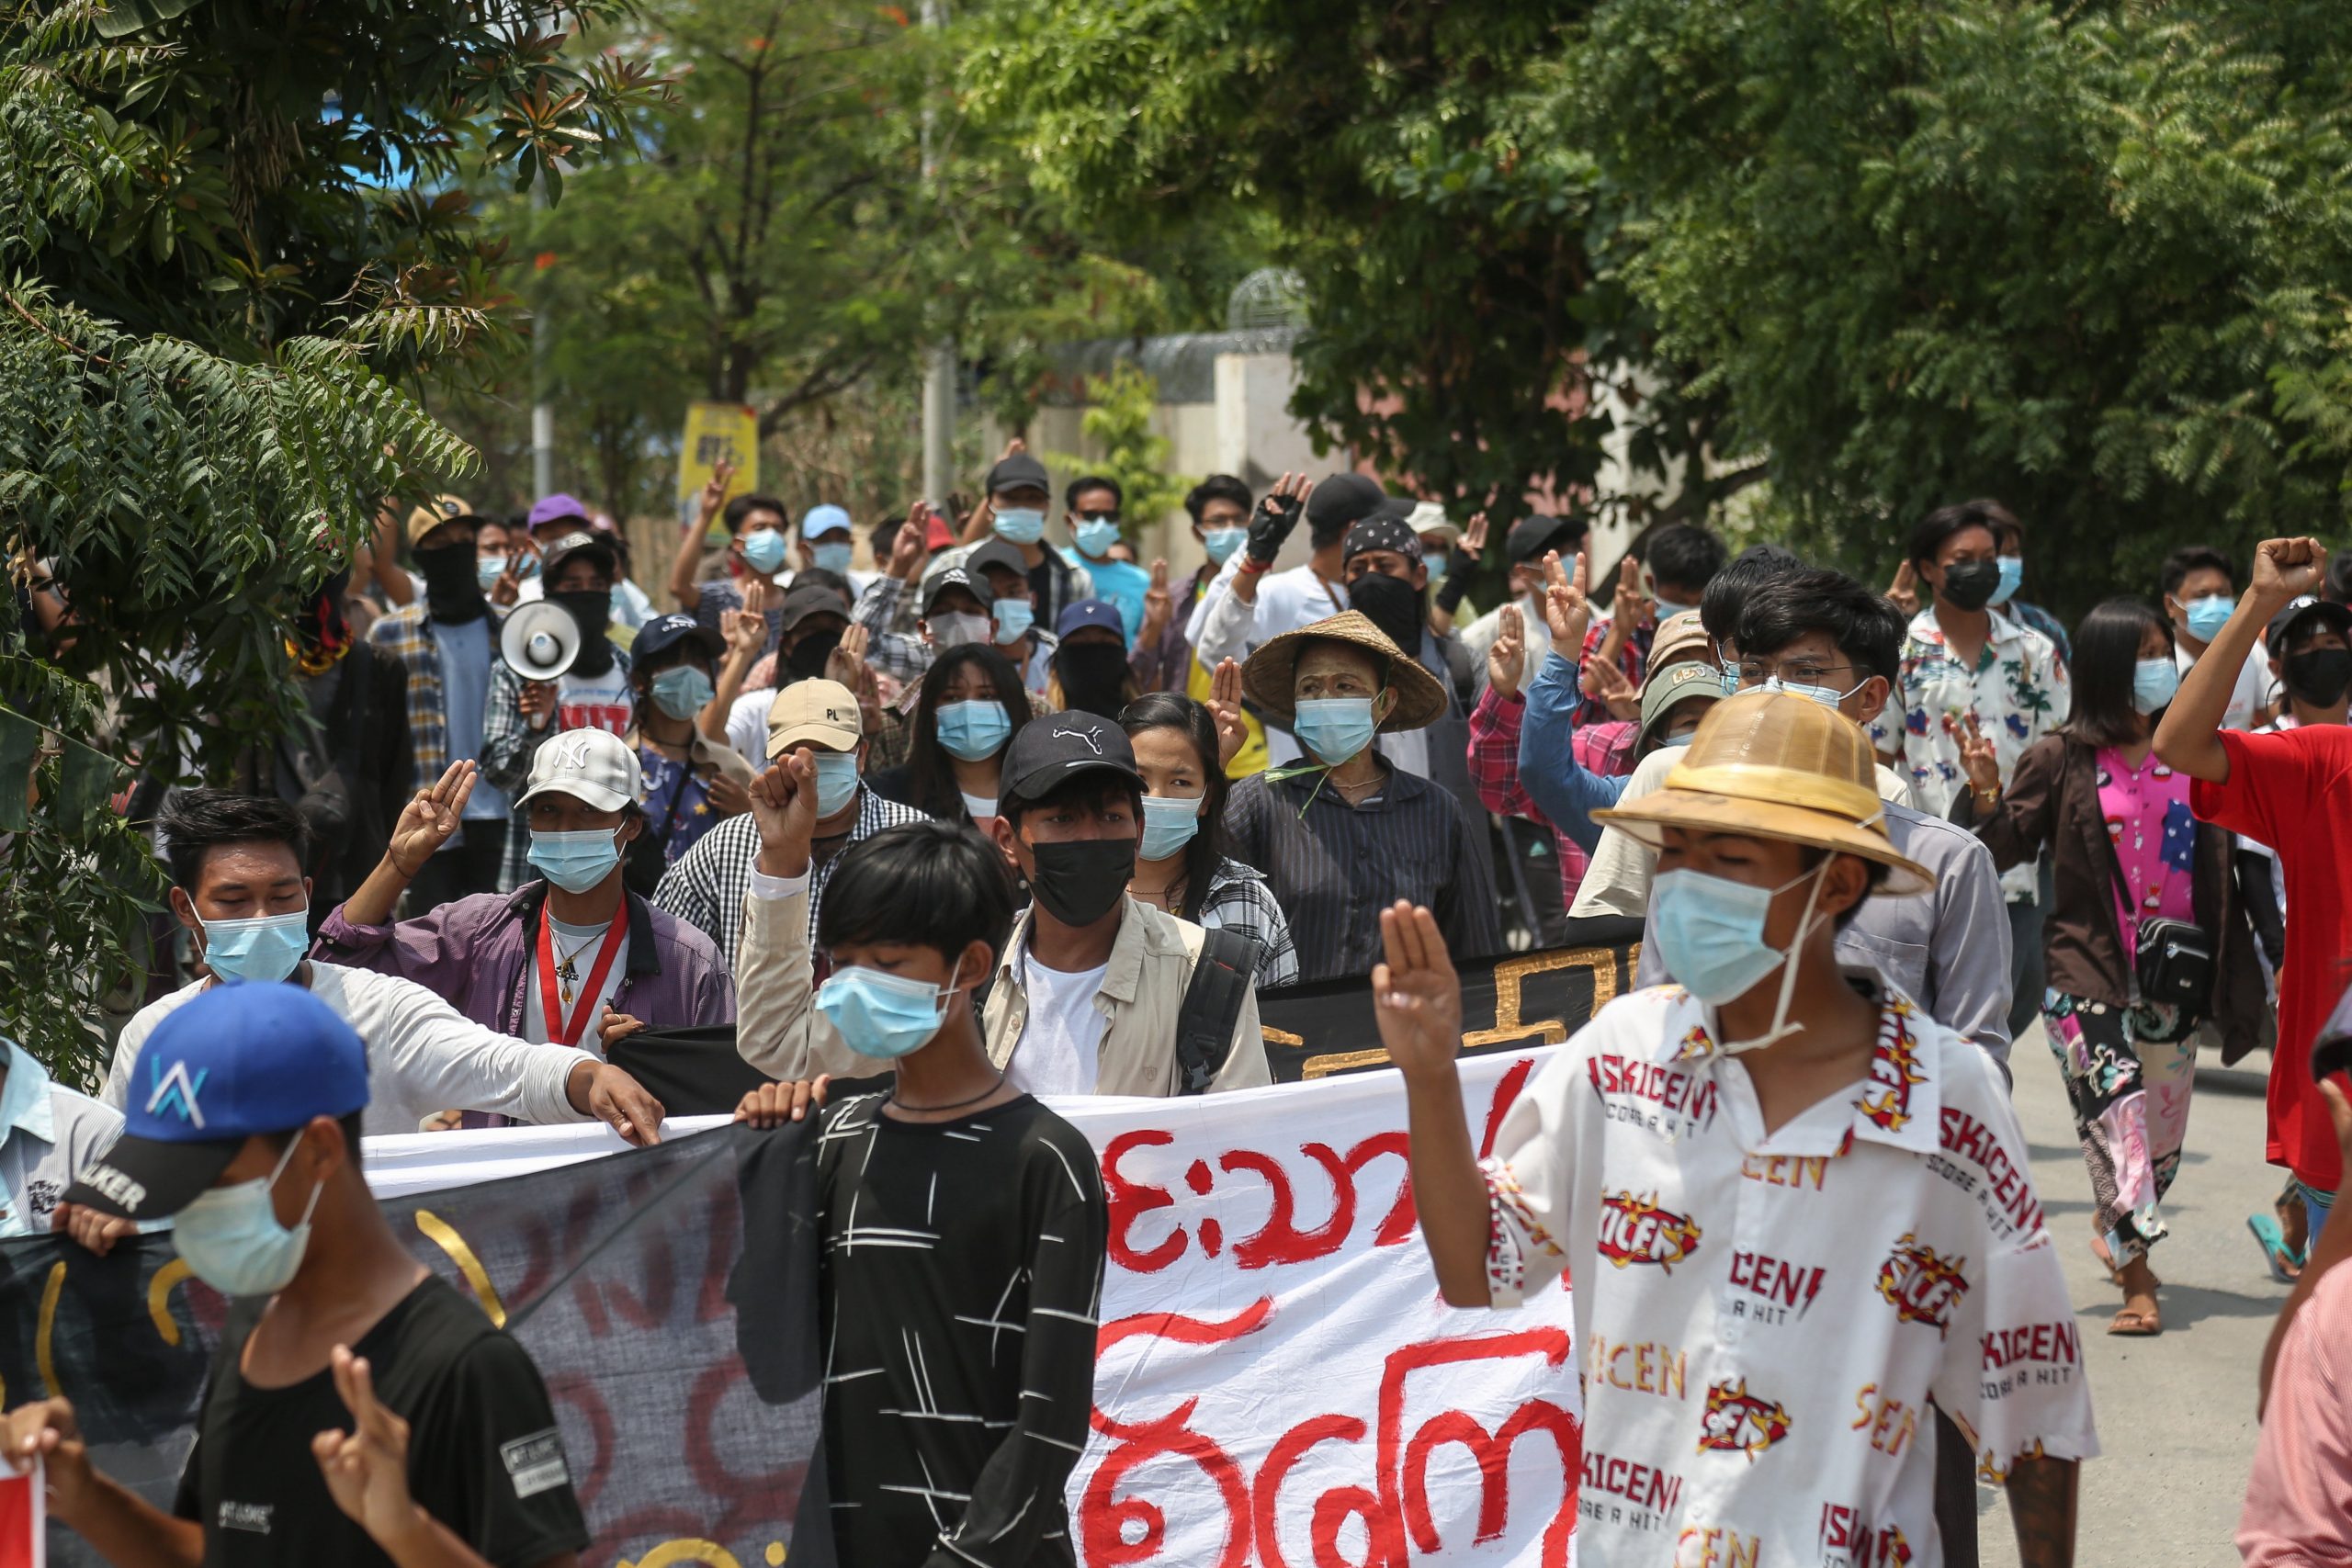 Los manifestantes marchan durante una protesta antimilitarista en Mandalay, Myanmar, el 18 de mayo de 2021. Foto: EFE